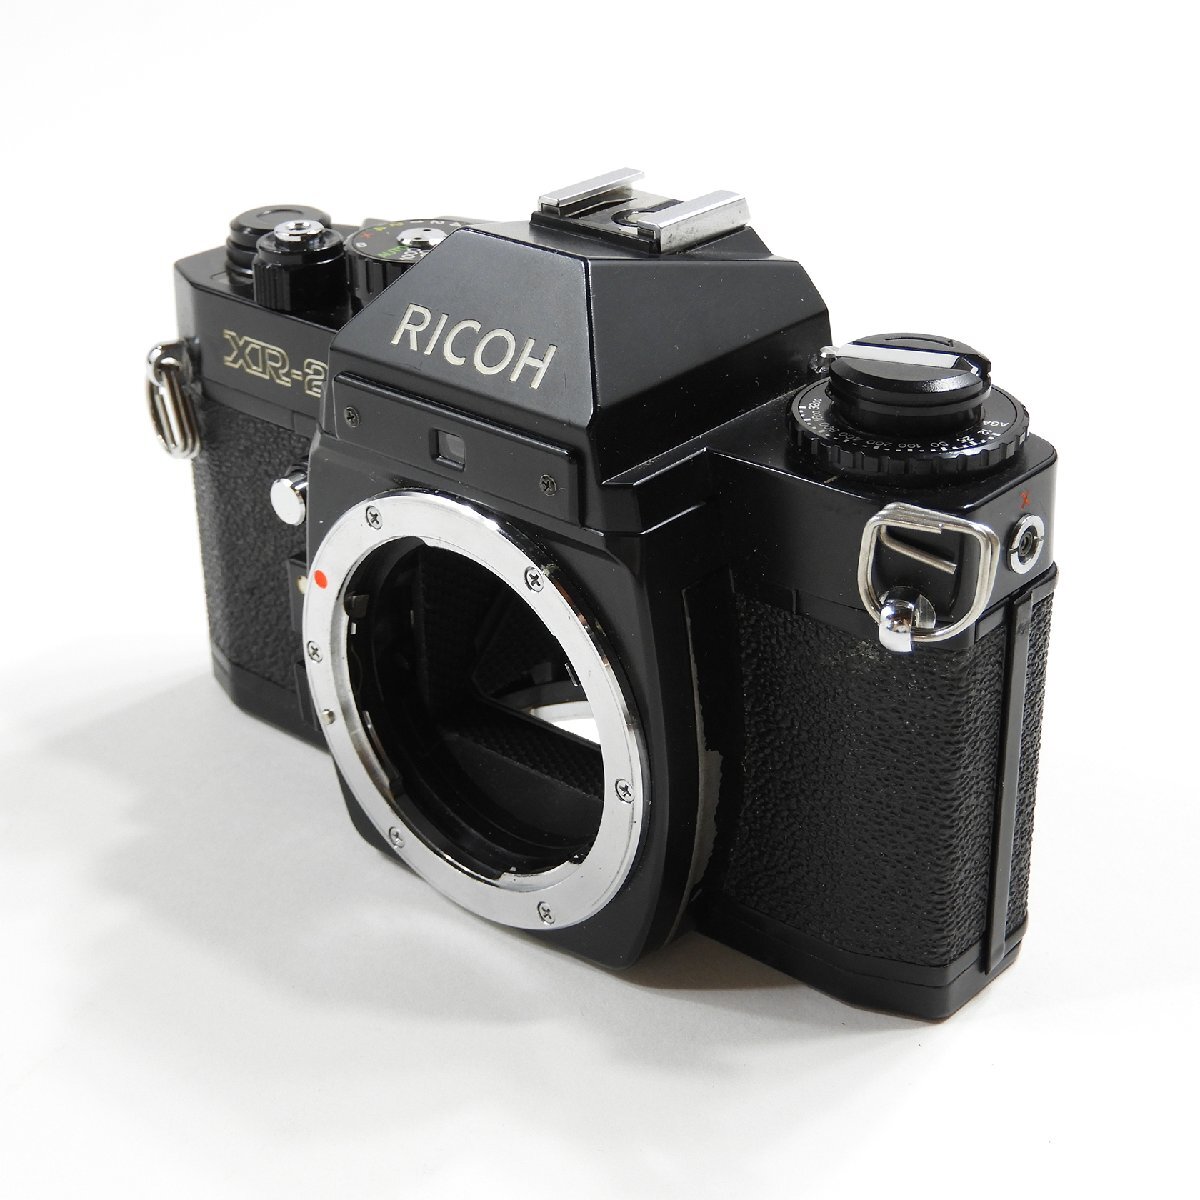 RICOH リコー XR-2 ボディ ジャンク #17569 フィルムカメラ 趣味 コレクションの画像1